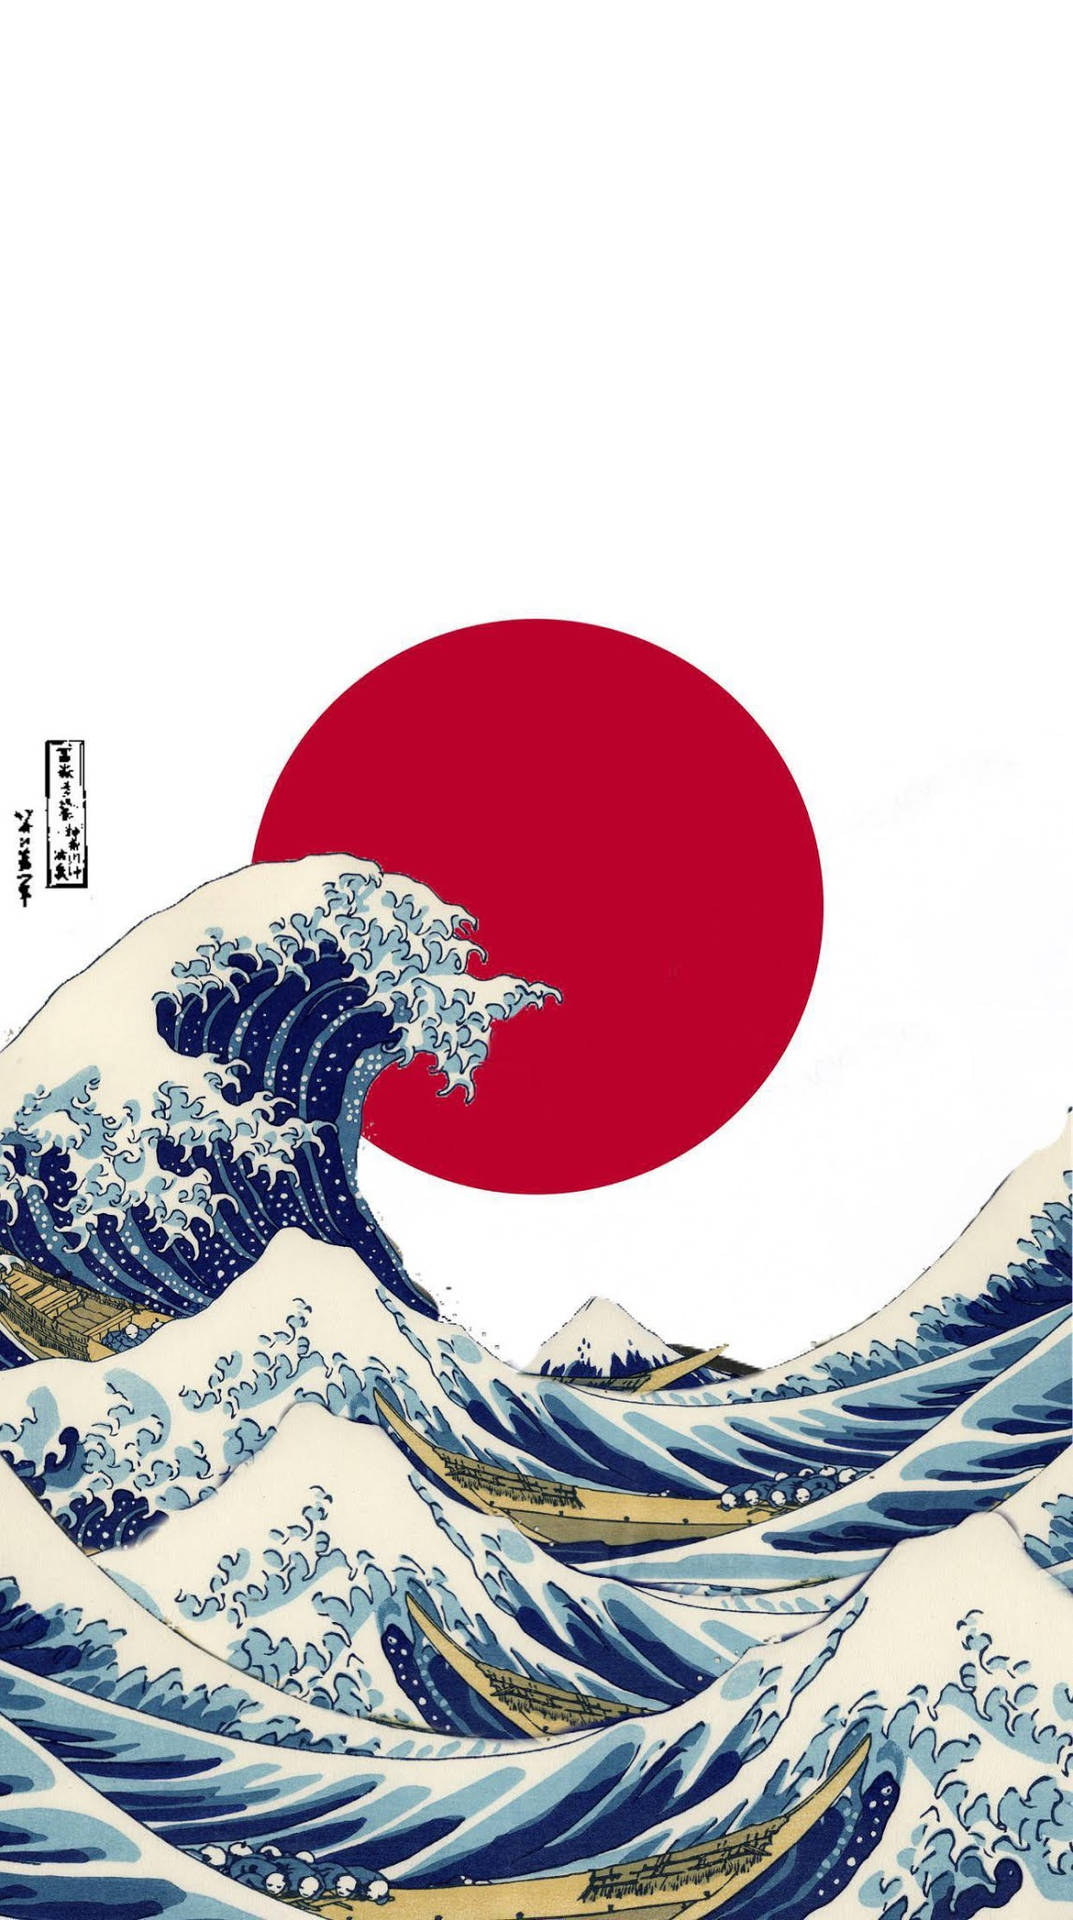 Rödsol Och Japanska Vågor. Wallpaper